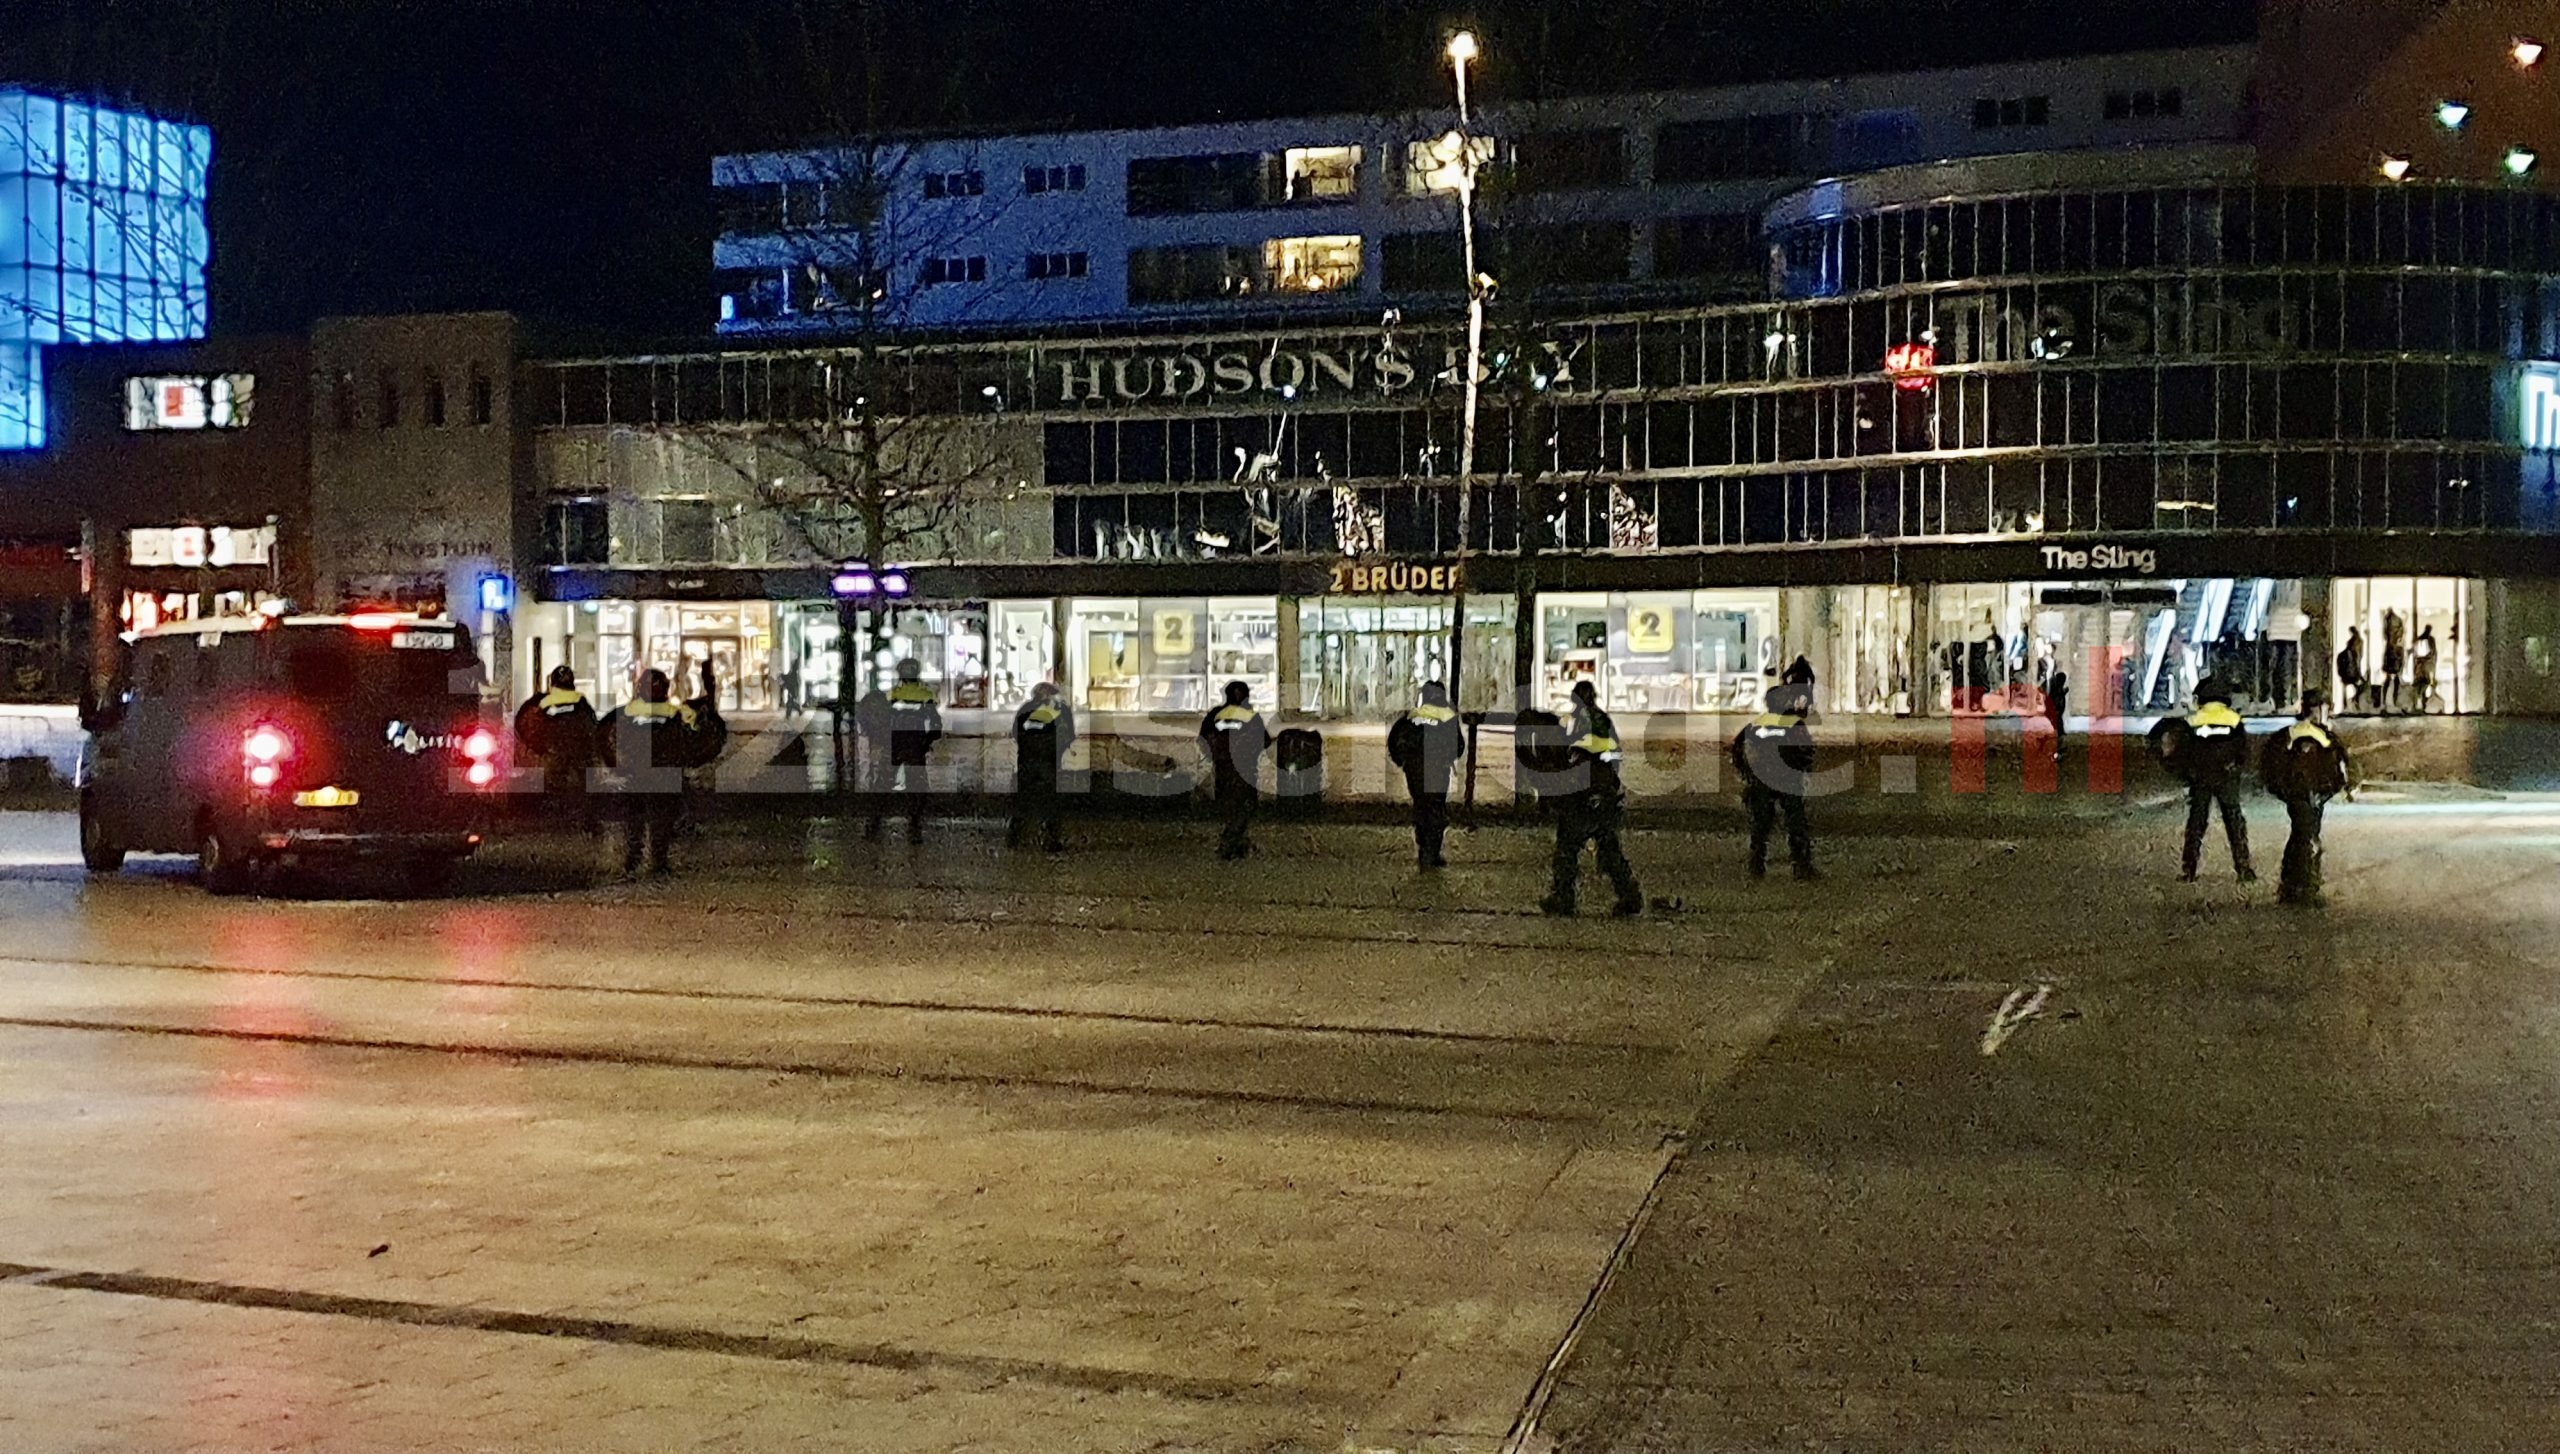 UPDATE: Grimmige sfeer in centrum Enschede; ME ingezet